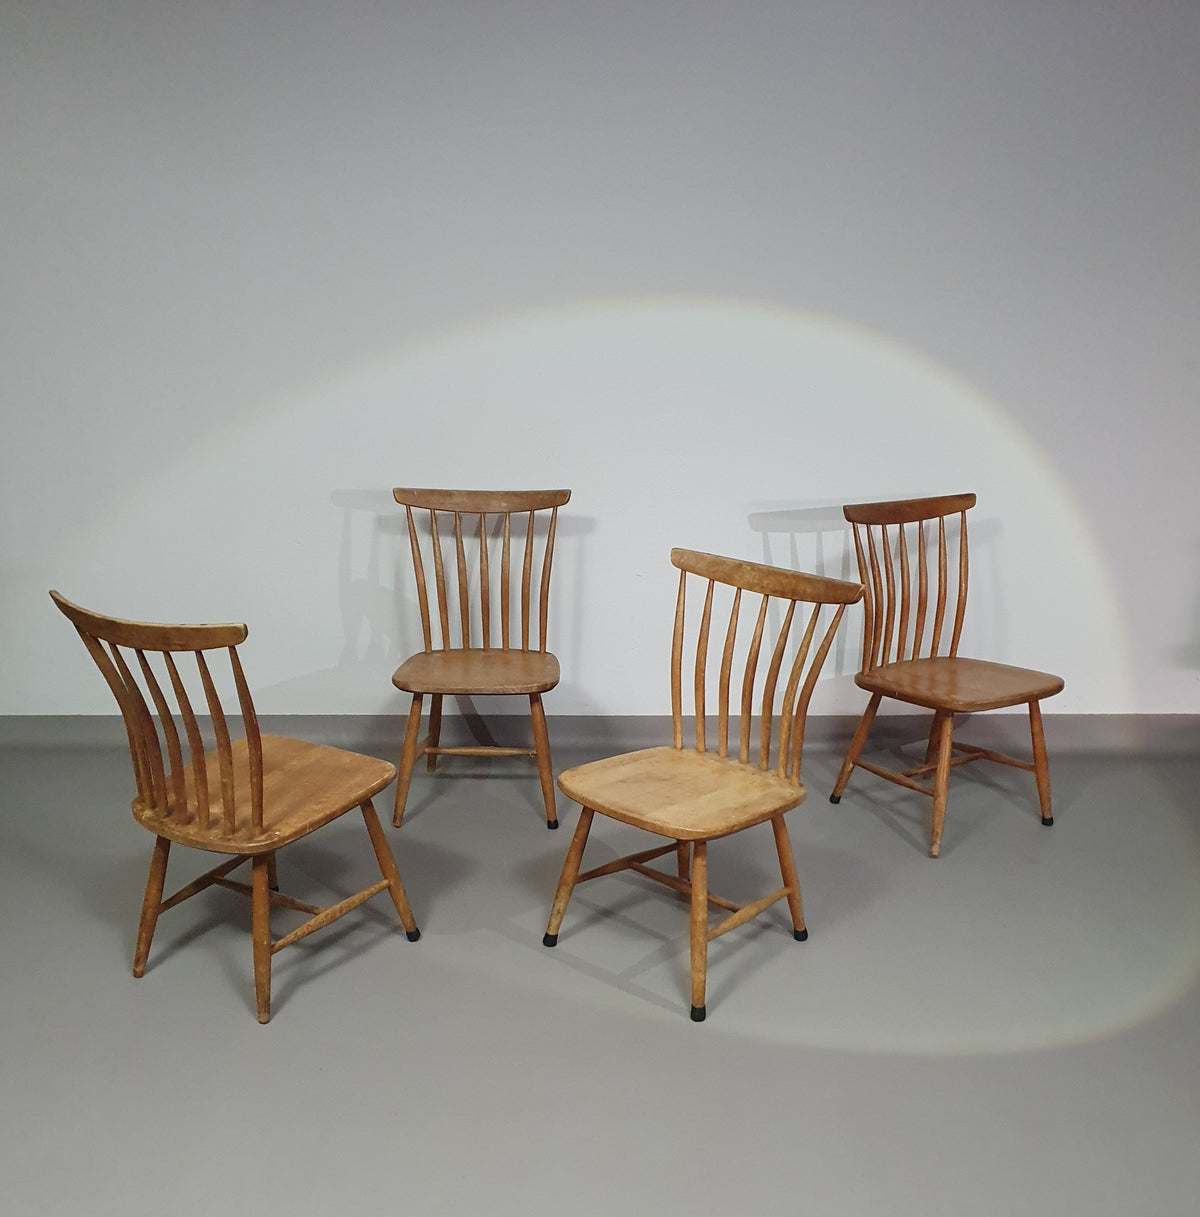 Scandinavian Design Chairs AKERBLOM Design Bar Chair Birch Wooden Chair Sweden